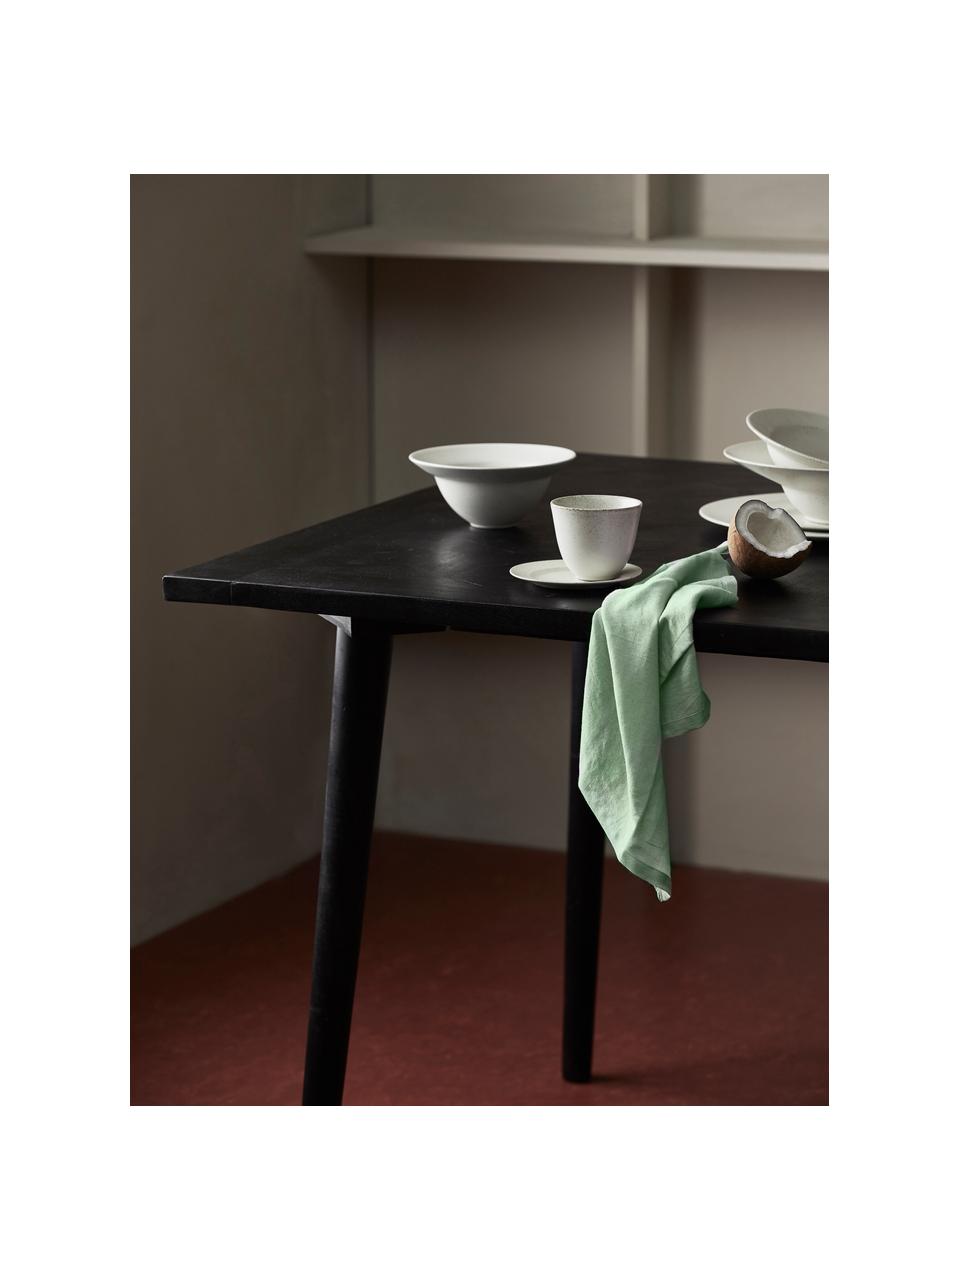 Serviette de table coton vert clair Bimba, 4 pièces, 85 % coton, 15 % lin, Vert clair, larg. 40 x long. 40 cm